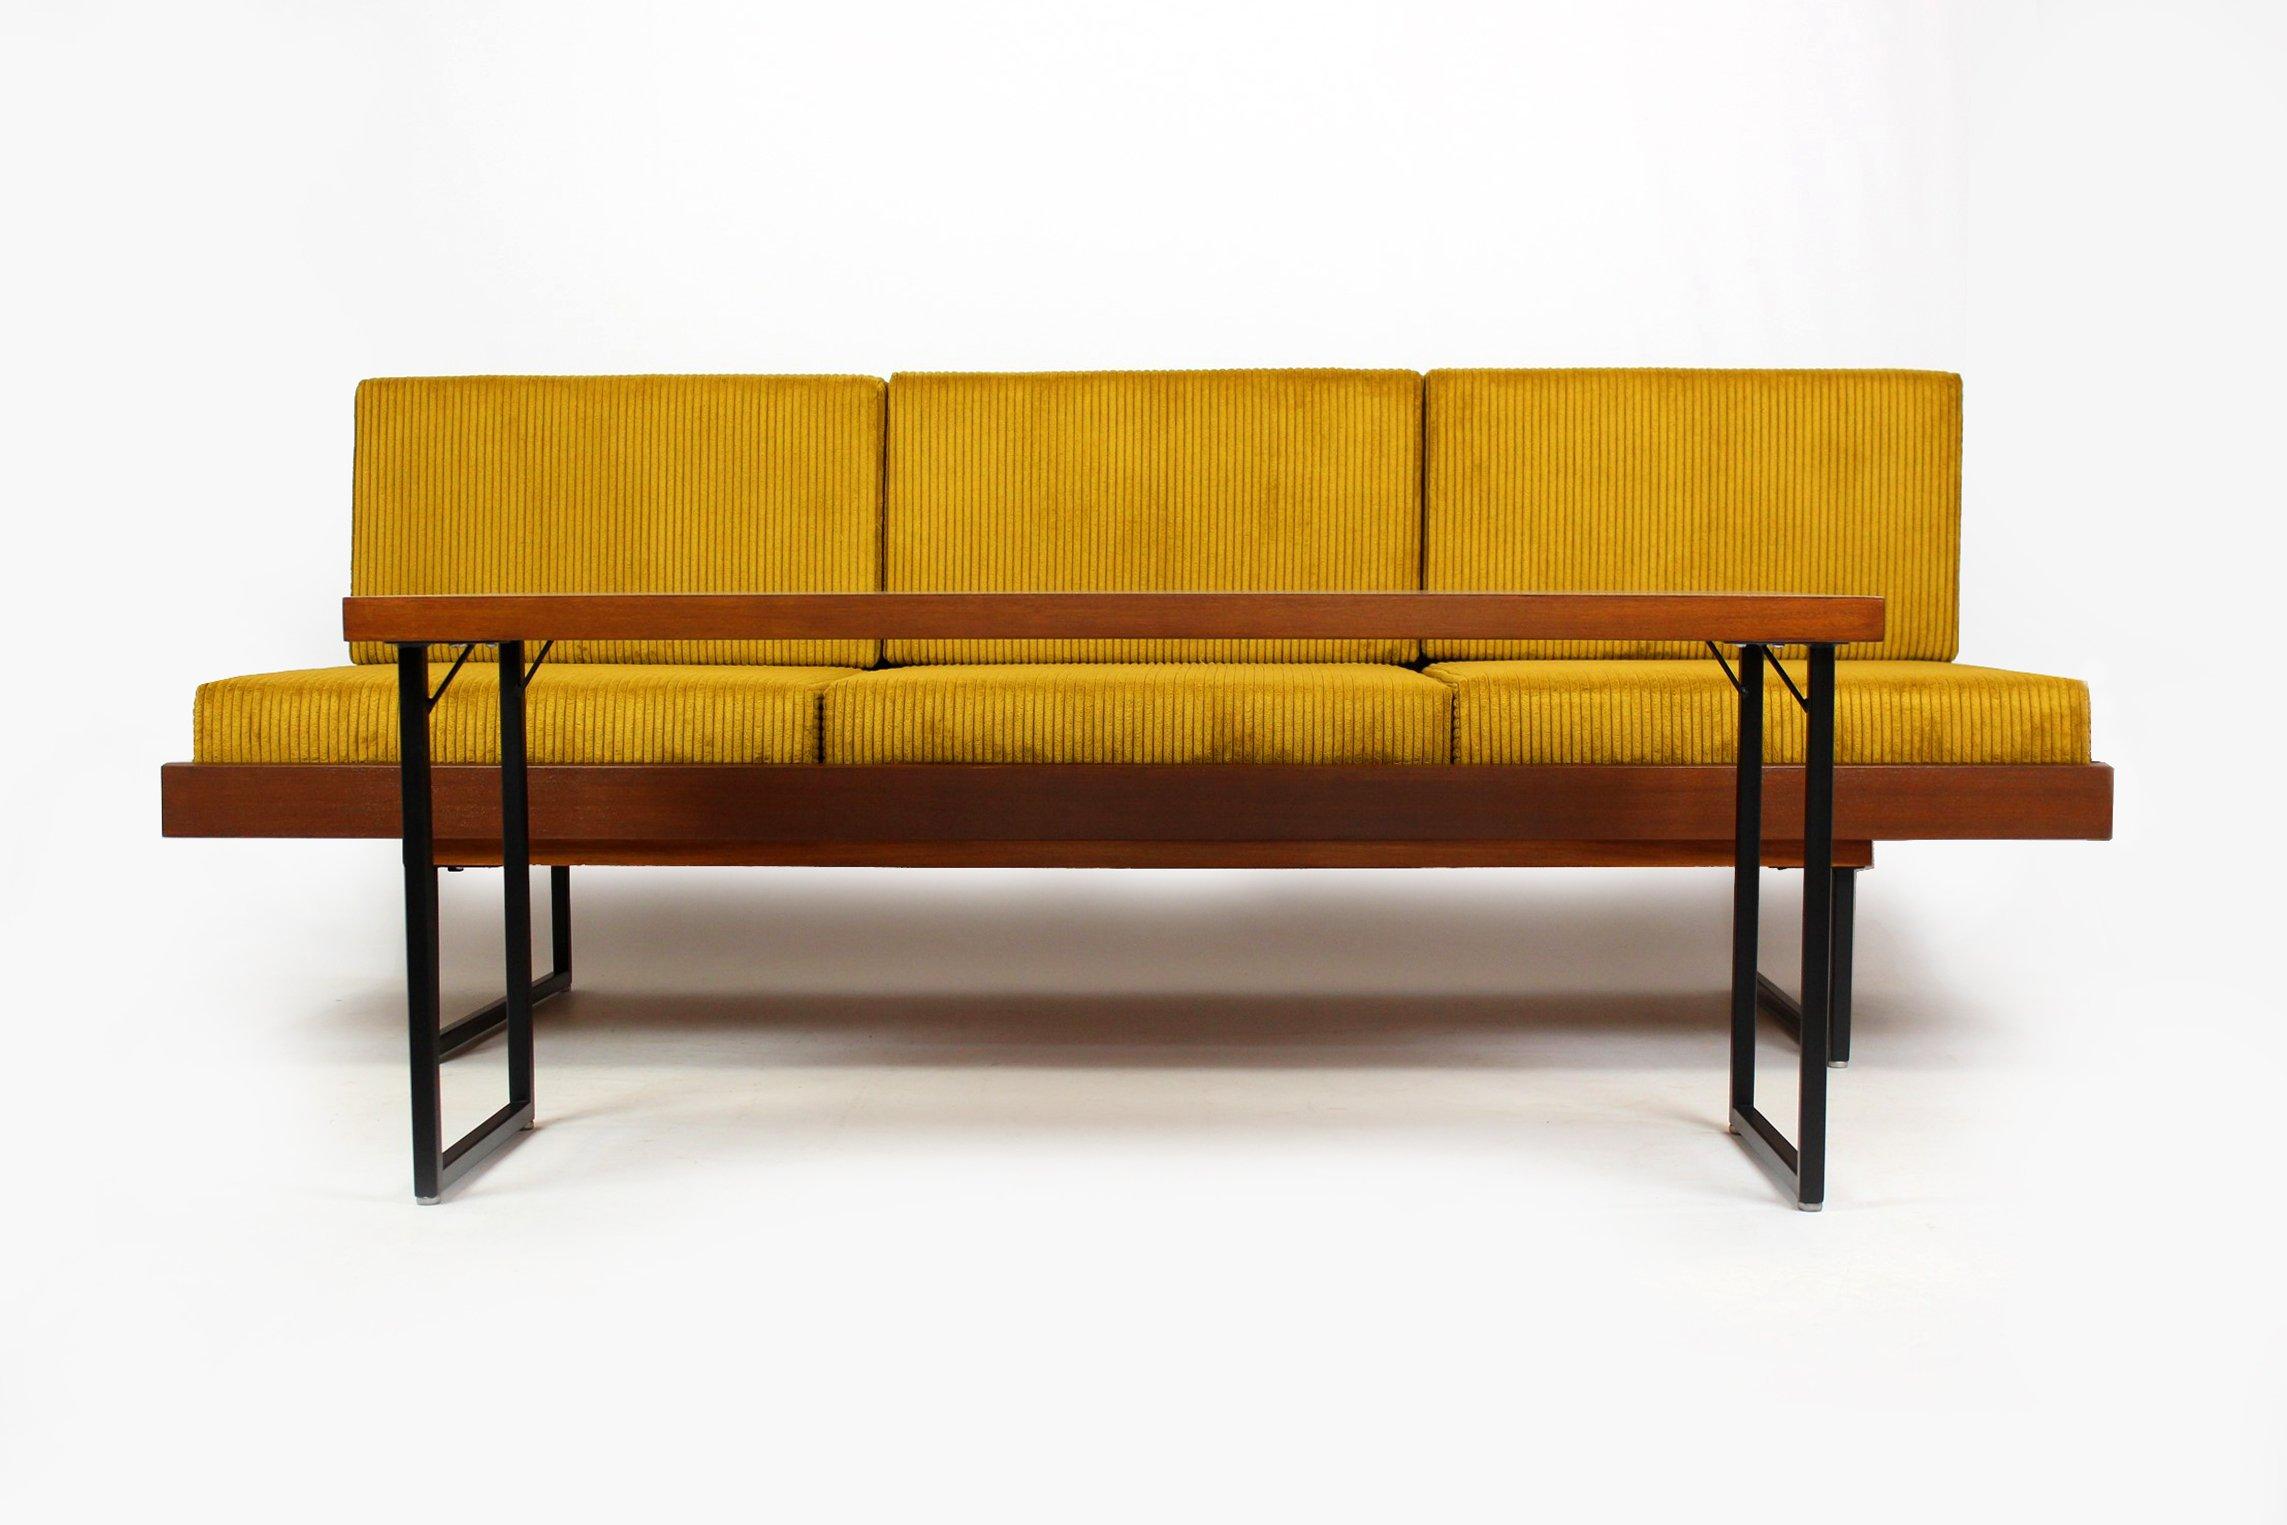 Canapé-lit du milieu du siècle avec table basse, fabriqué dans les années 1960 par Interi Praha en Tchécoslovaquie. Fabriqué en bois plaqué acajou, monté sur des pieds en métal.

Le canapé a été restauré, les boiseries et les éléments métalliques